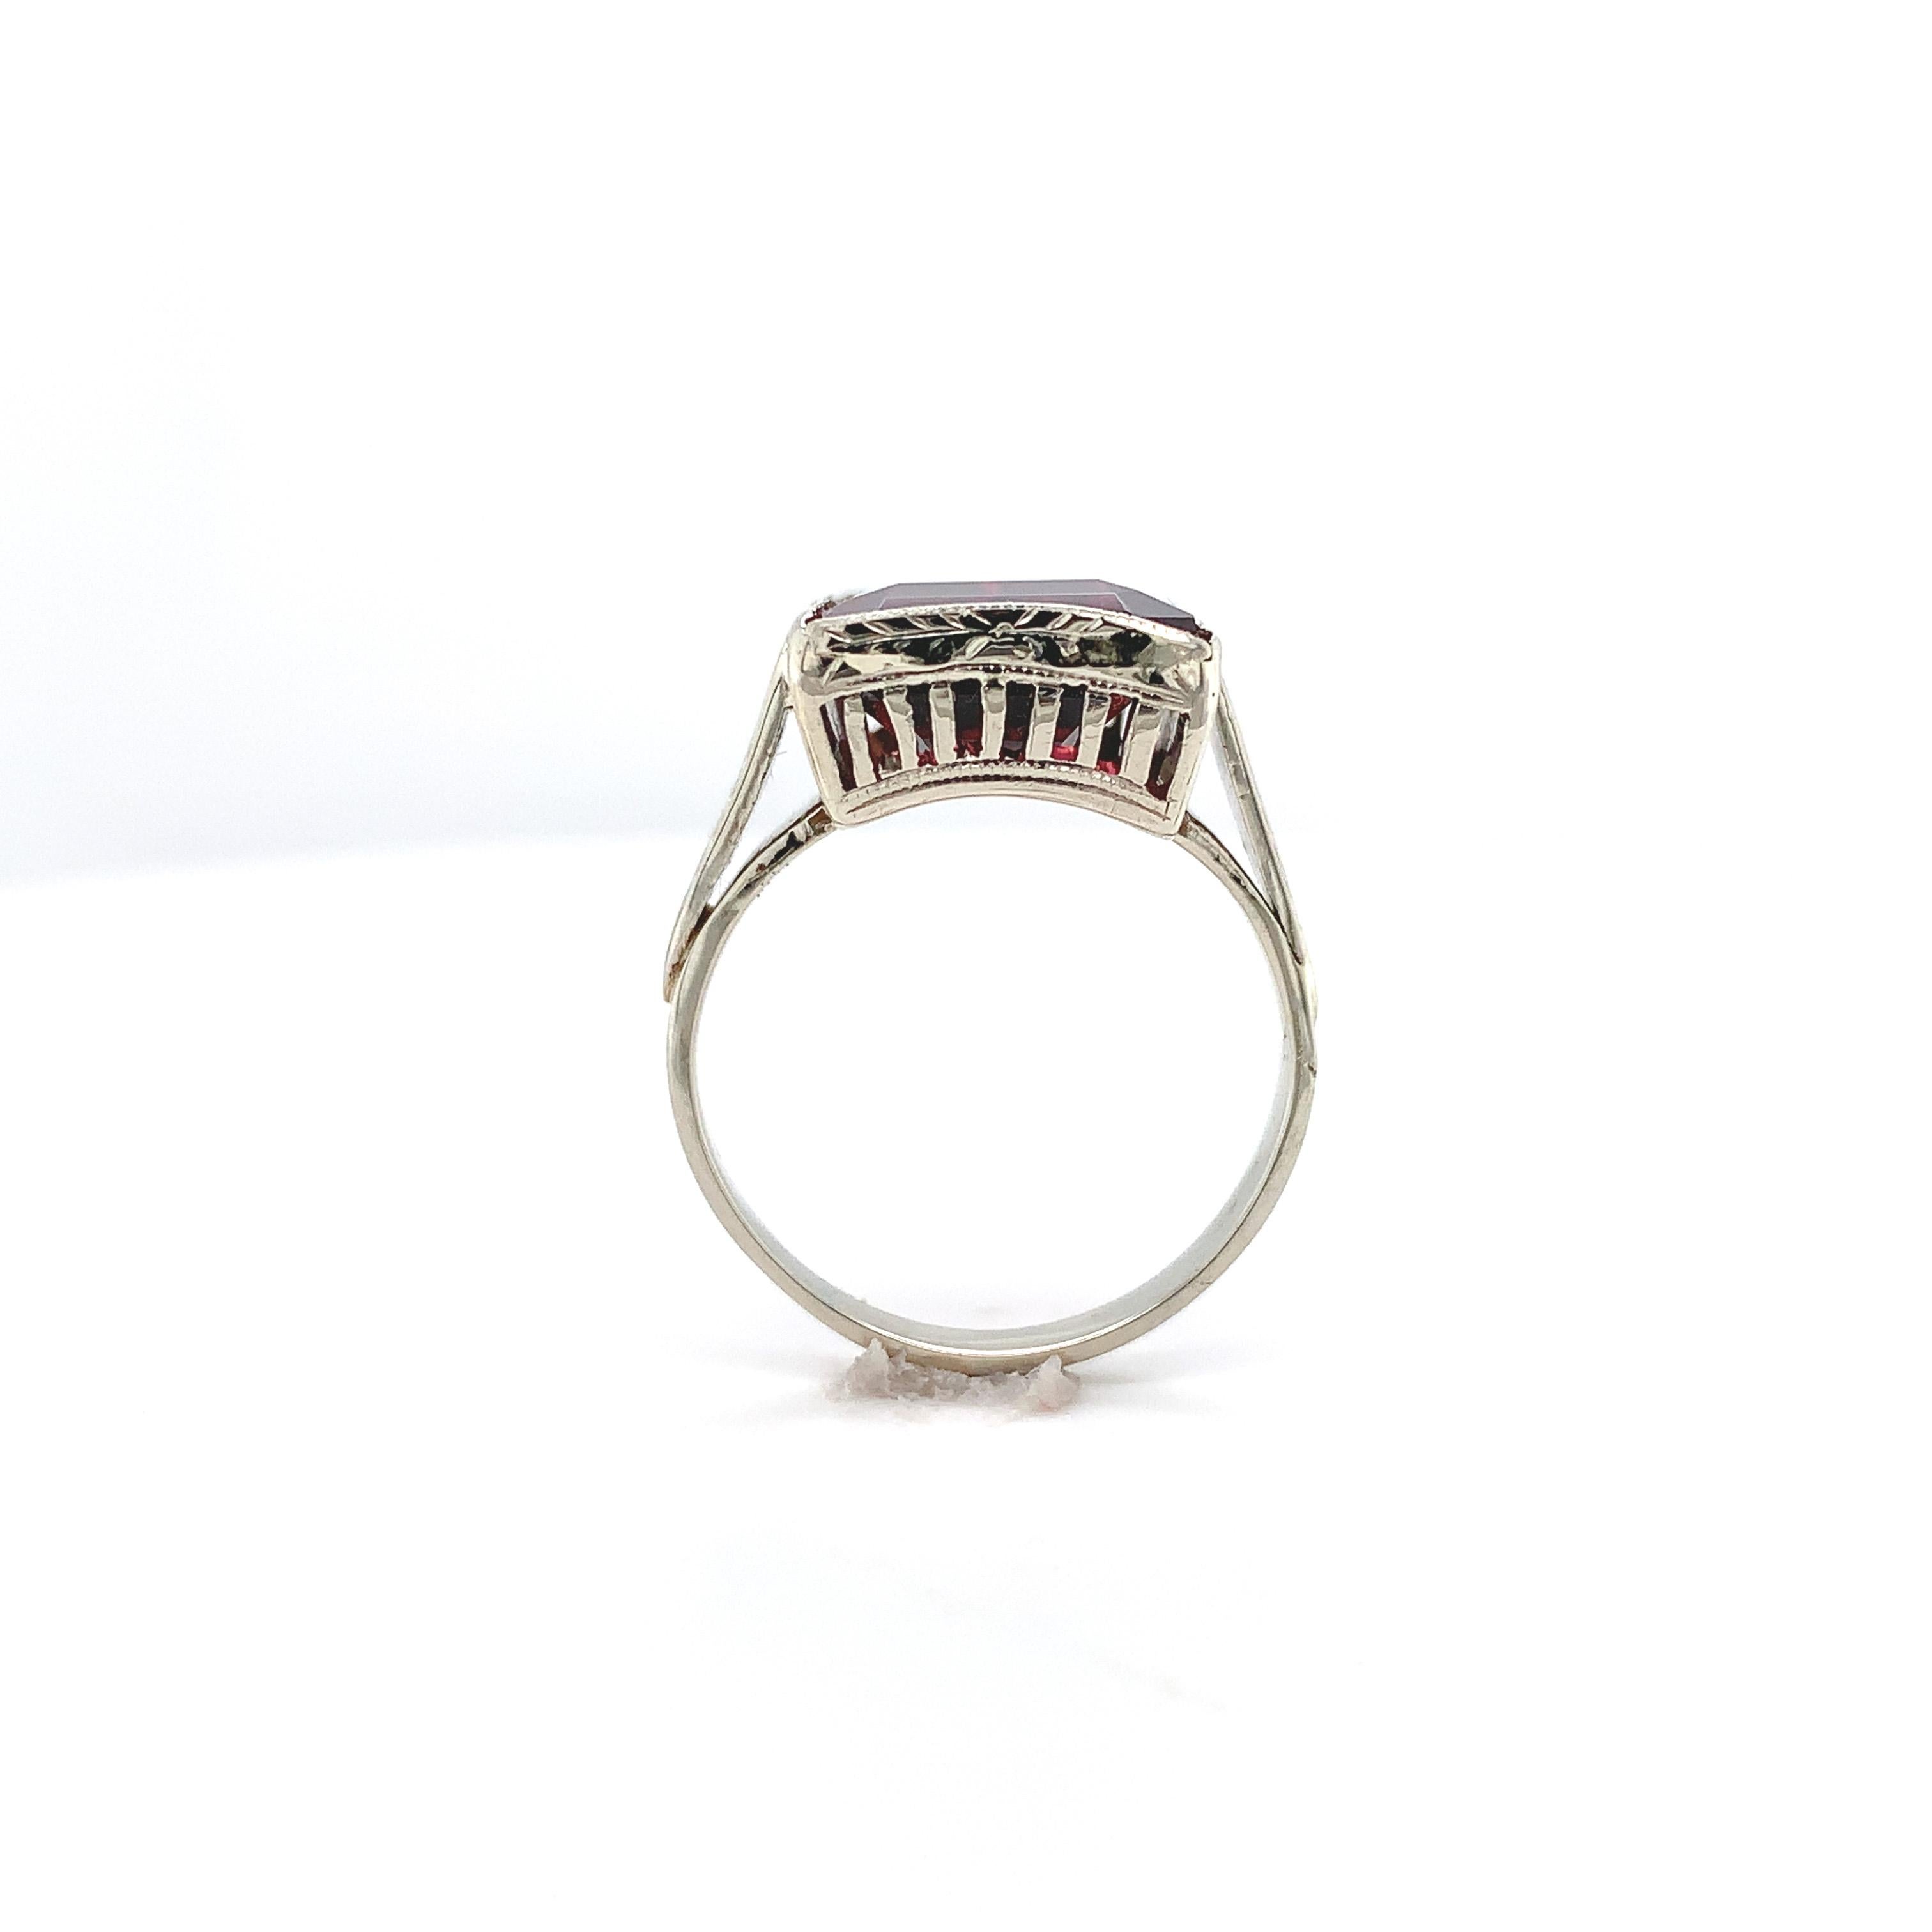 Vintage-Ring aus 14 Karat Weißgold mit einem Rhodolith-Granat im Smaragdschliff. Dieser tief himbeerfarbene, dunkelrosa-rote Granat wiegt 8,35 Karat und misst etwa 14 mm x 10 mm. Die Halterung ist vollständig von Hand graviert. Der Ring war